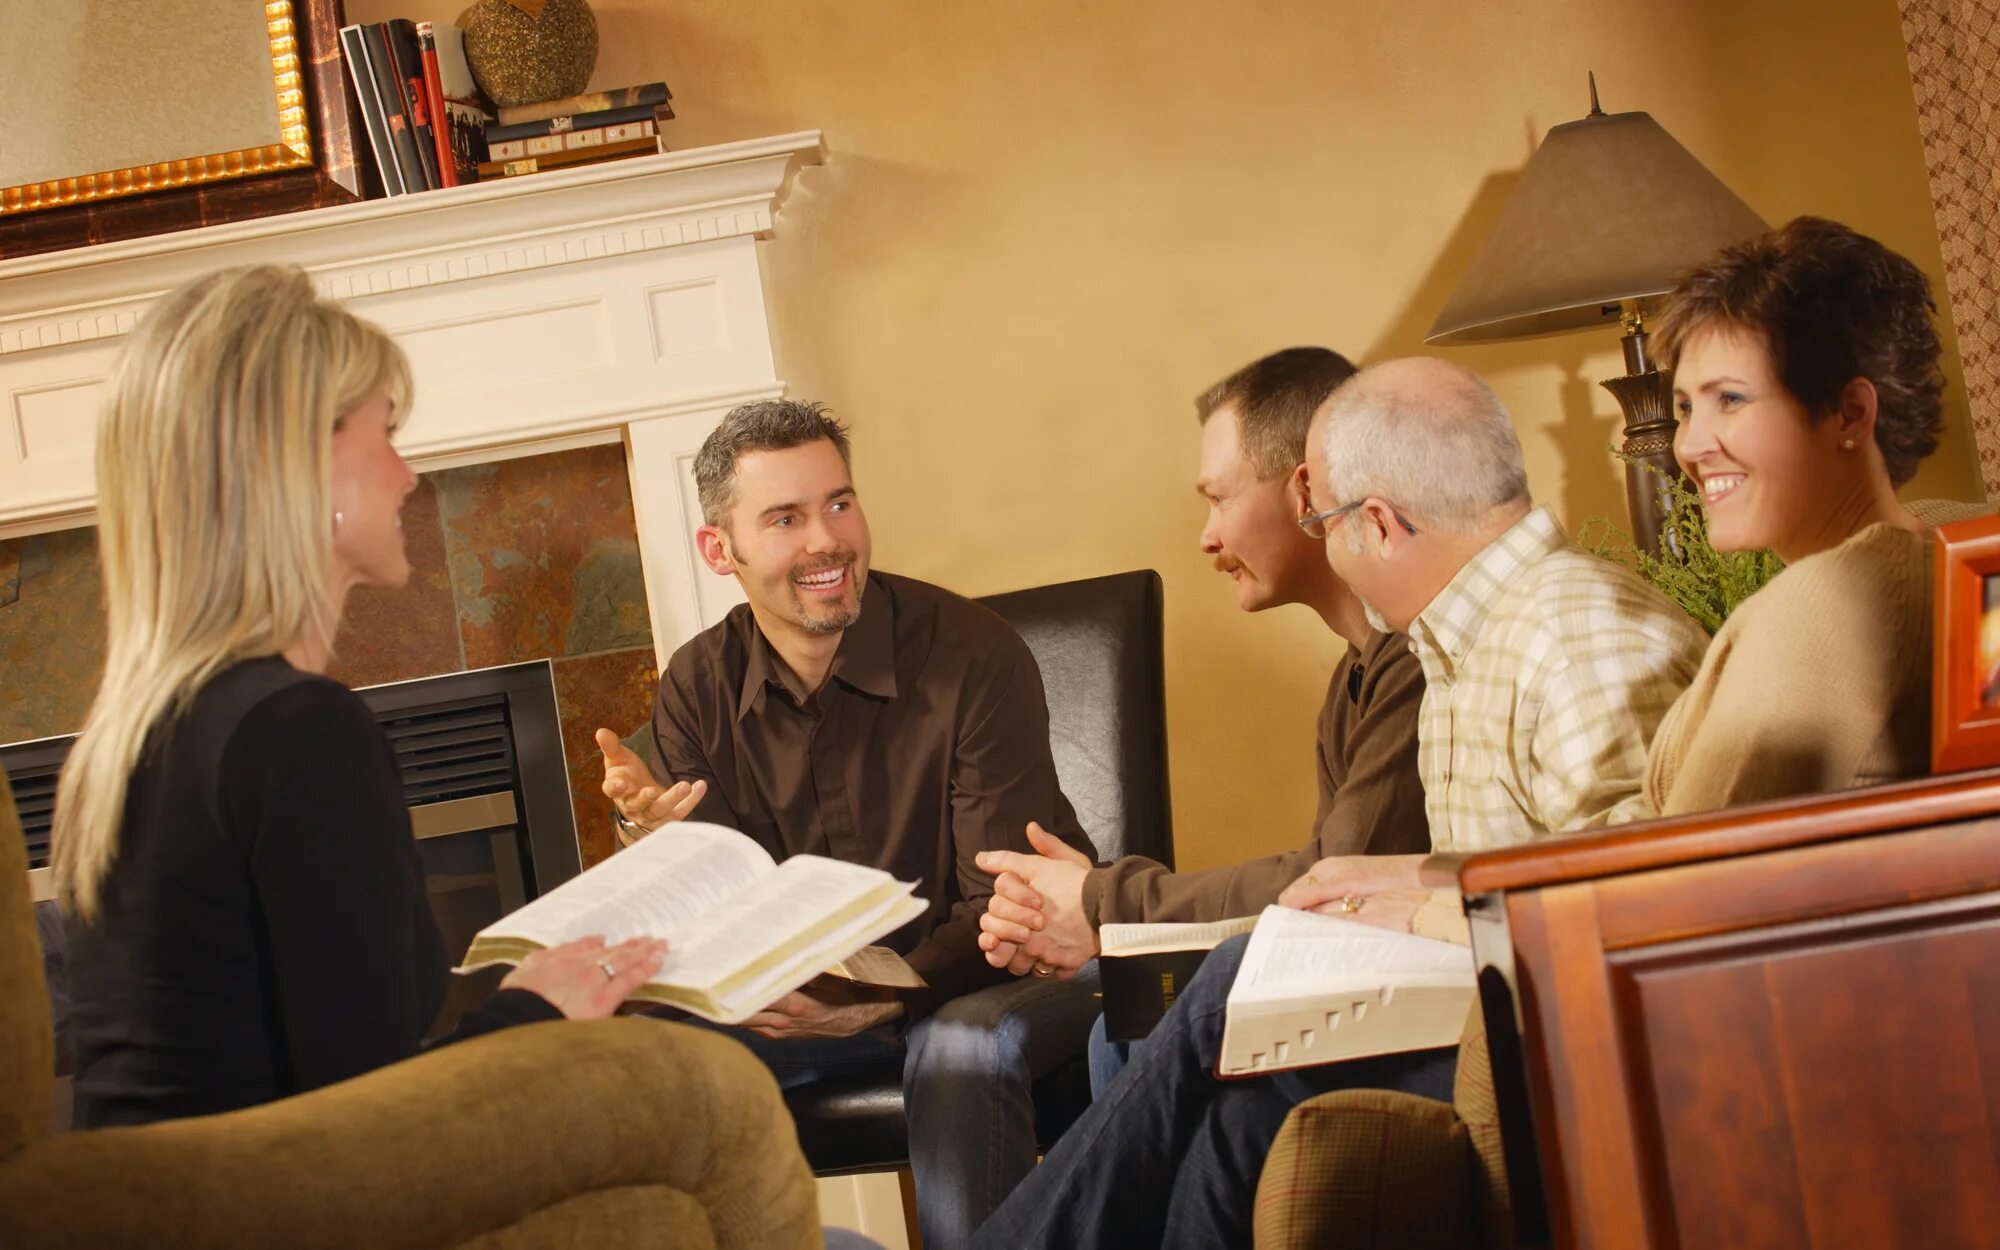 Домашняя группа 6. Домашняя группа Церковь. Домашняя группа по изучению Библии. Домашнее изучение Библии. Общение верующих друг с другом.